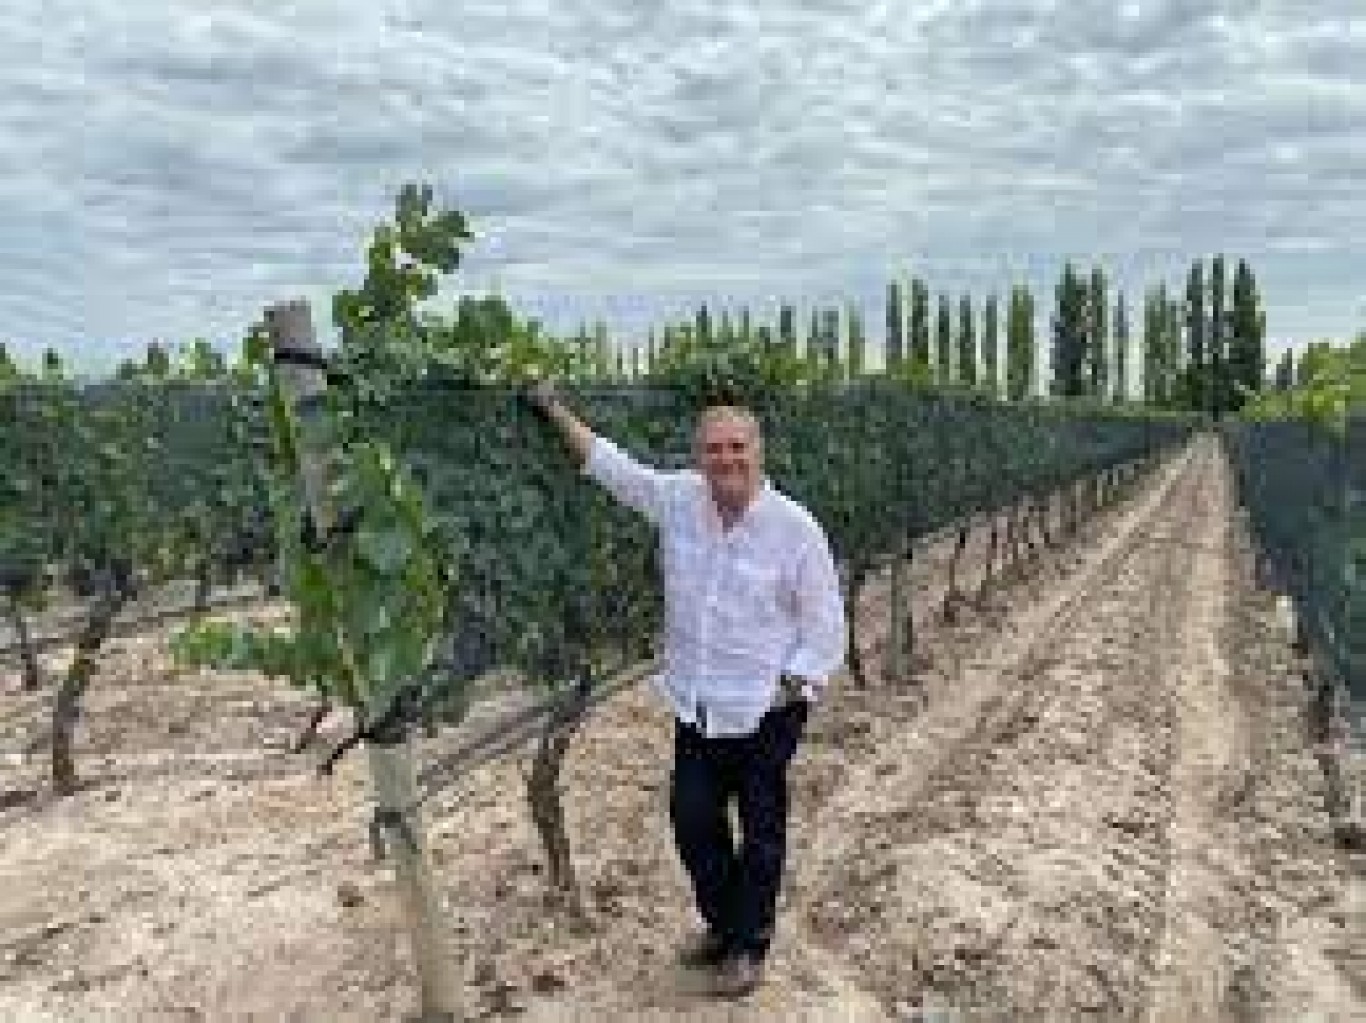 "Estábamos empezando el desarrollo del vino autóctono ucraniano hasta que vino esto.." , Ricardo Fernández Núñez.